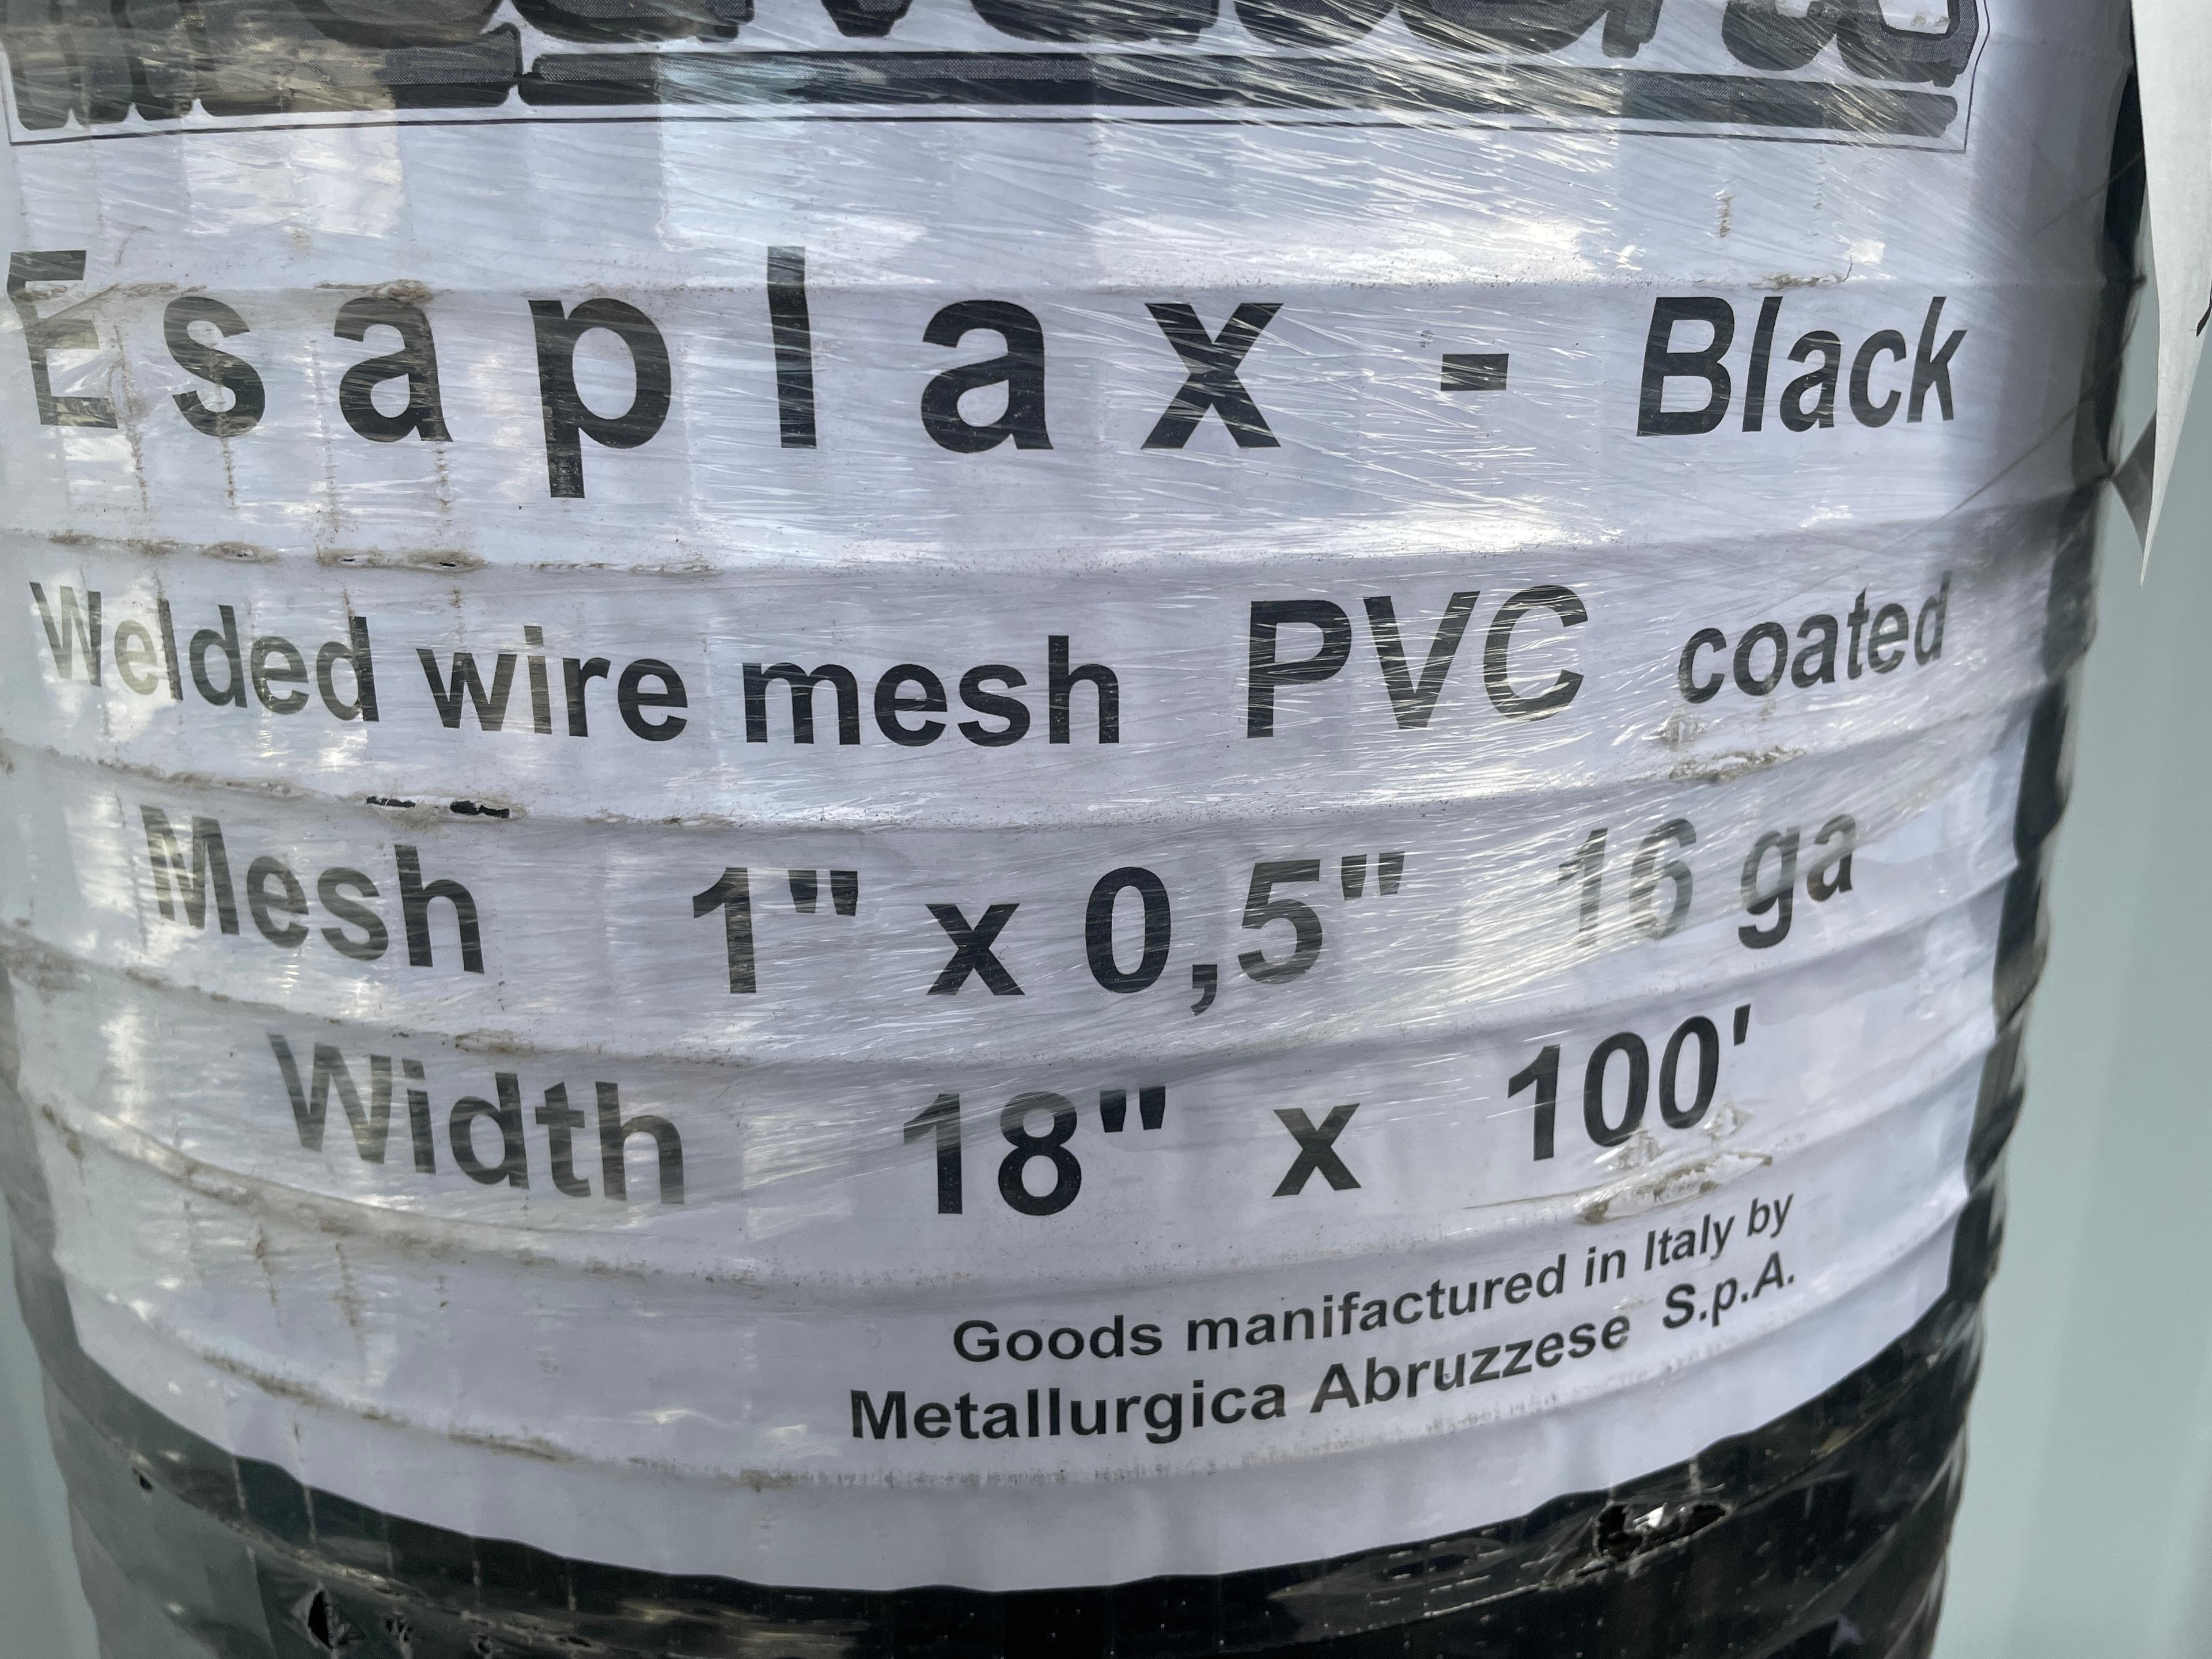 (4X) New Cavatorta 18"X100' Wire Mesh Black